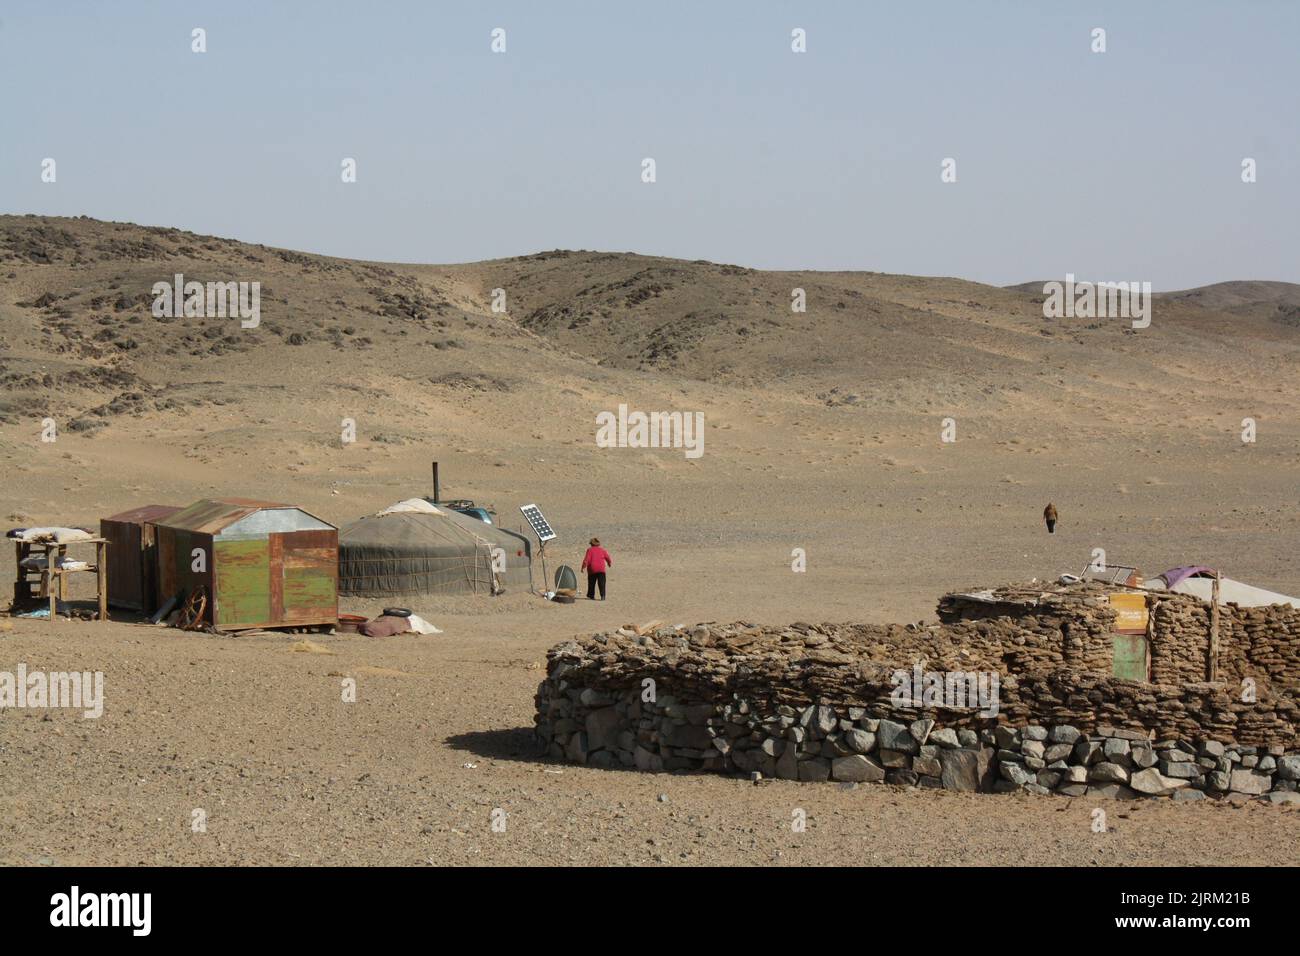 Die Haufen der Tiermönchen und Mongol ger (Zelt) in der einsamen Wüste, Gobi, Mongolei. Stockfoto